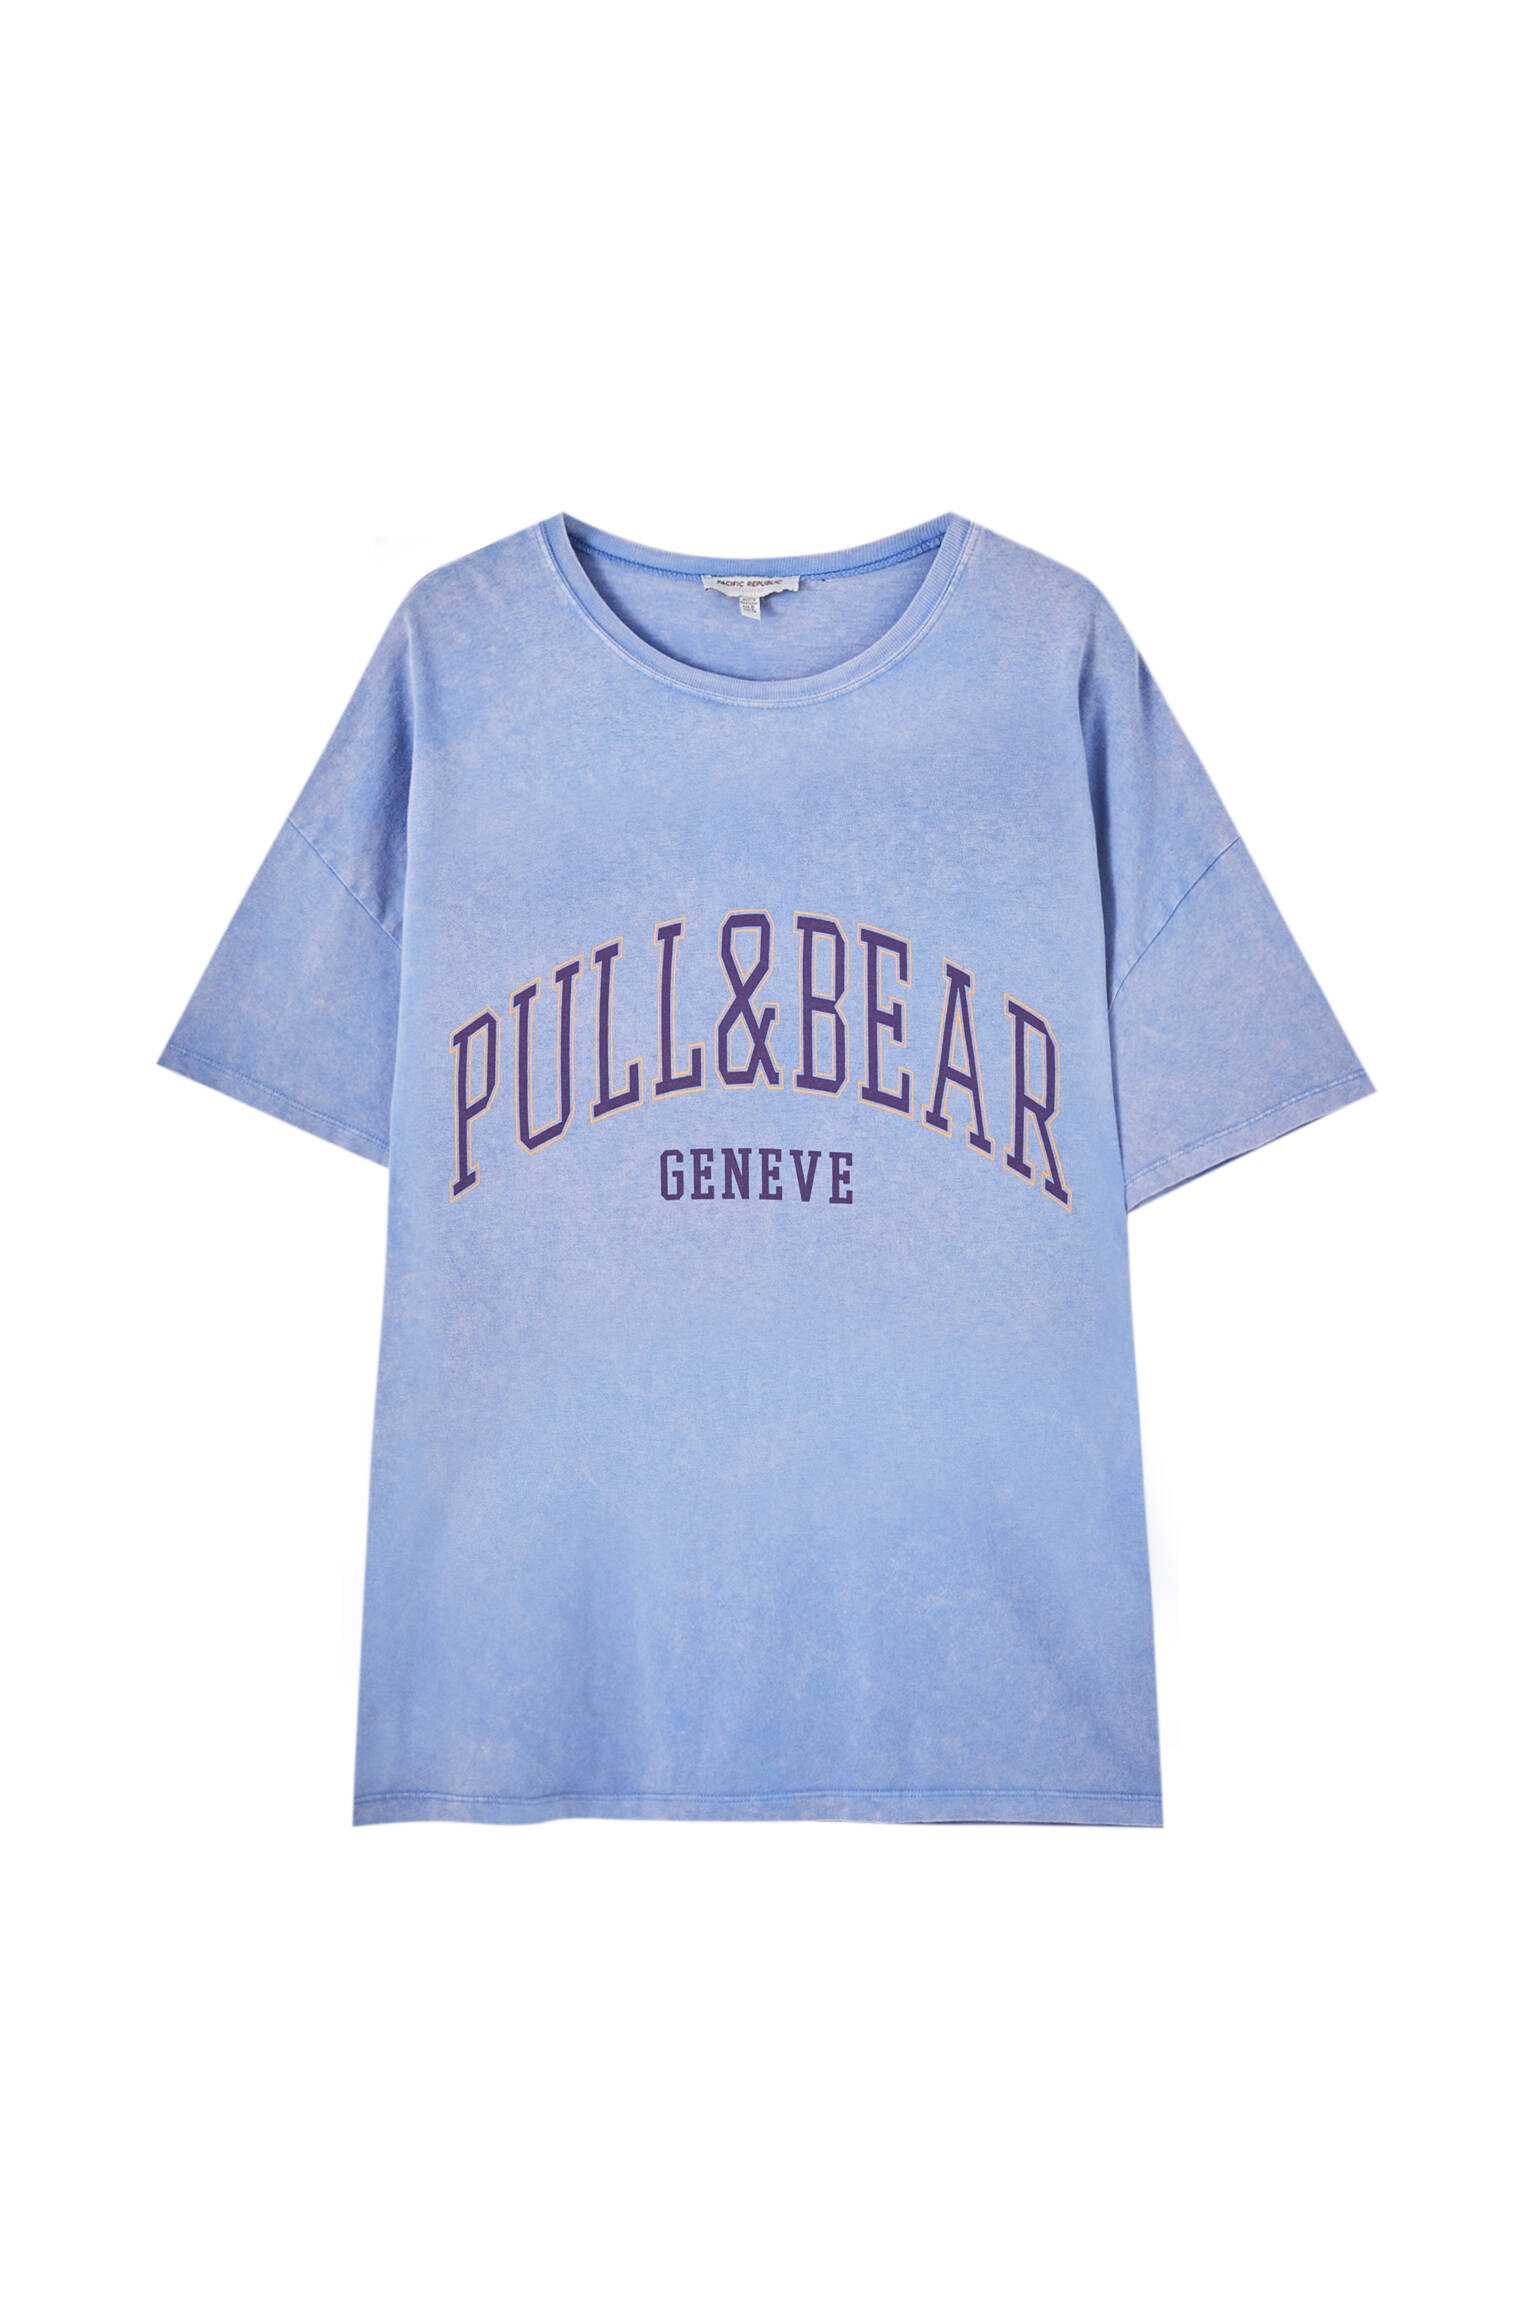 Pull&bear Femme T-shirt 100 % Coton à Col Rond Et Manches Courtes, Avec Logo Pull&bear Et Inscription Genève Contrastante Sur La Poitrine. Indigo DÉlavÉ M